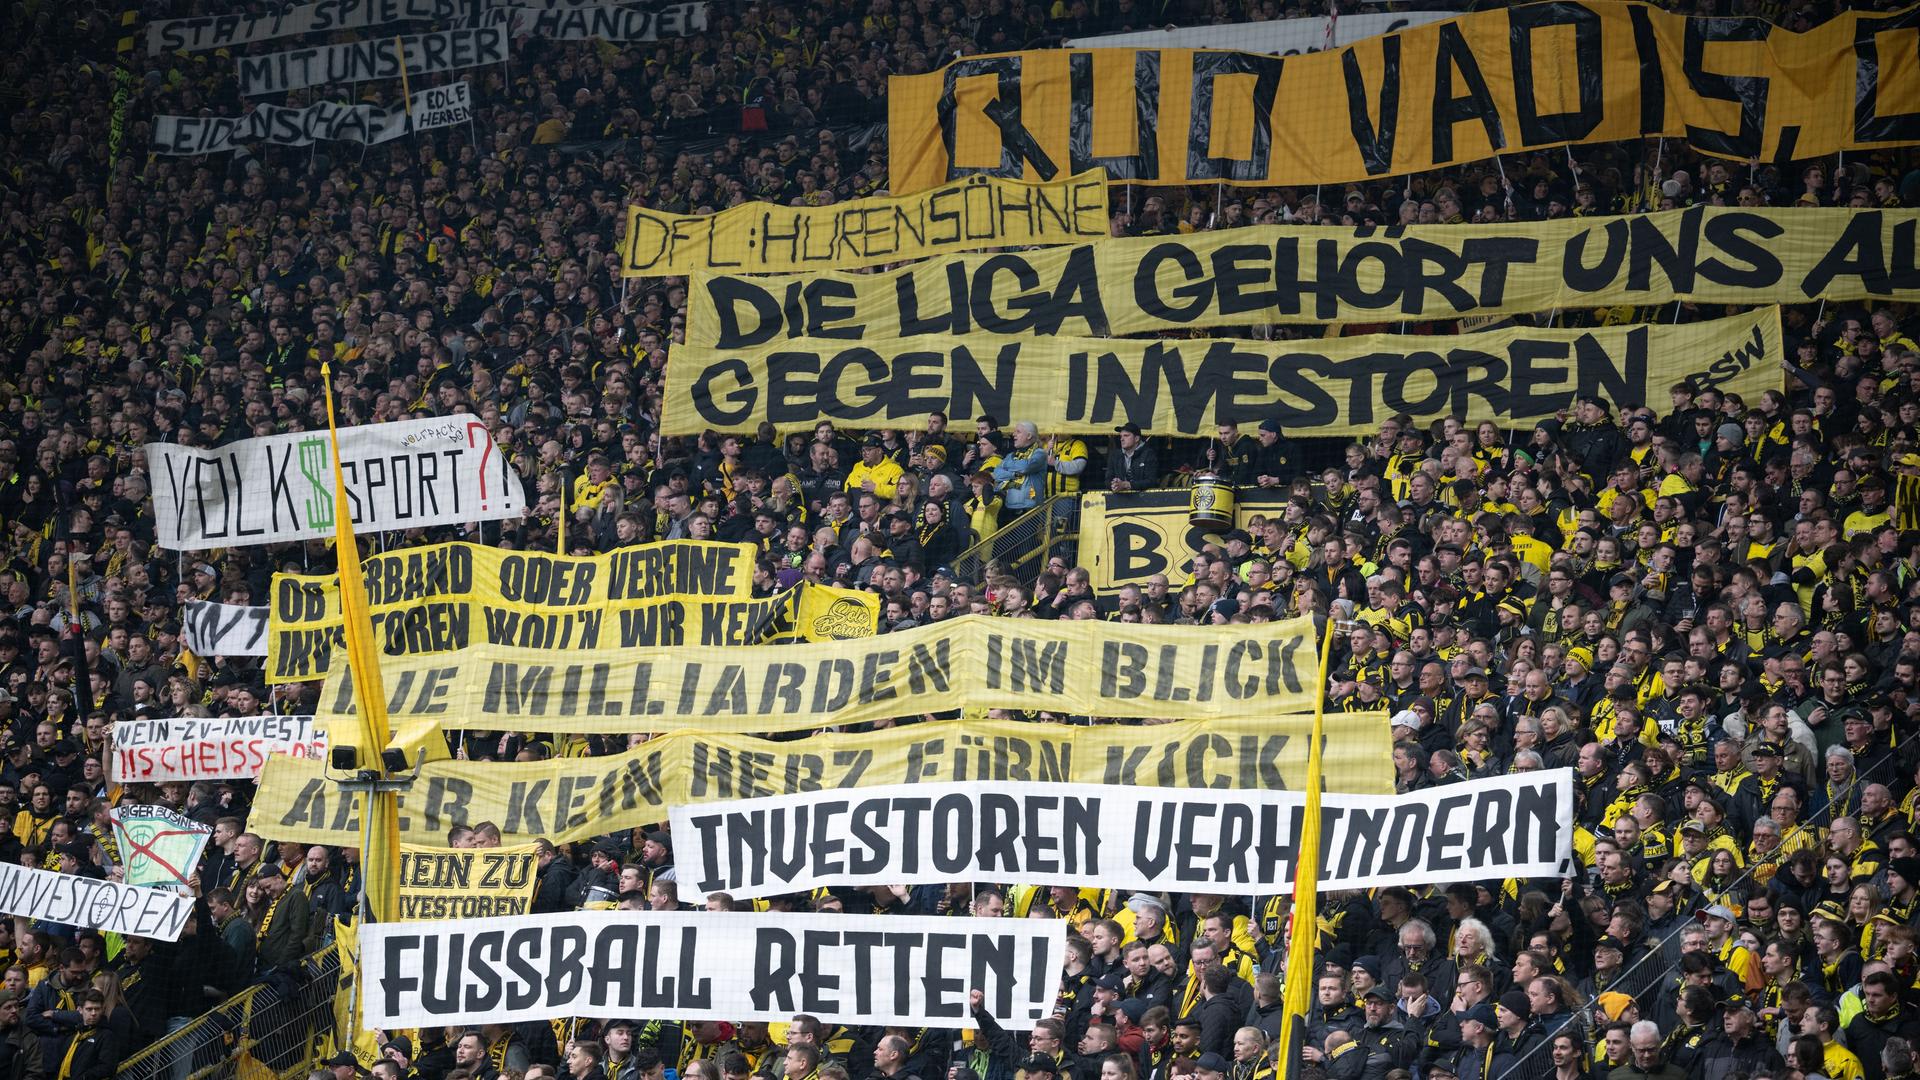 Transparente mit den Aufschriften: "DFL Hurensöhne", "Die Liga gehört uns ...", "Gegen Investoren", "Die Milliarden im Blick", "Kein Herz fürn Kick", "Investoren verhindern" sowie "Fußball retten".